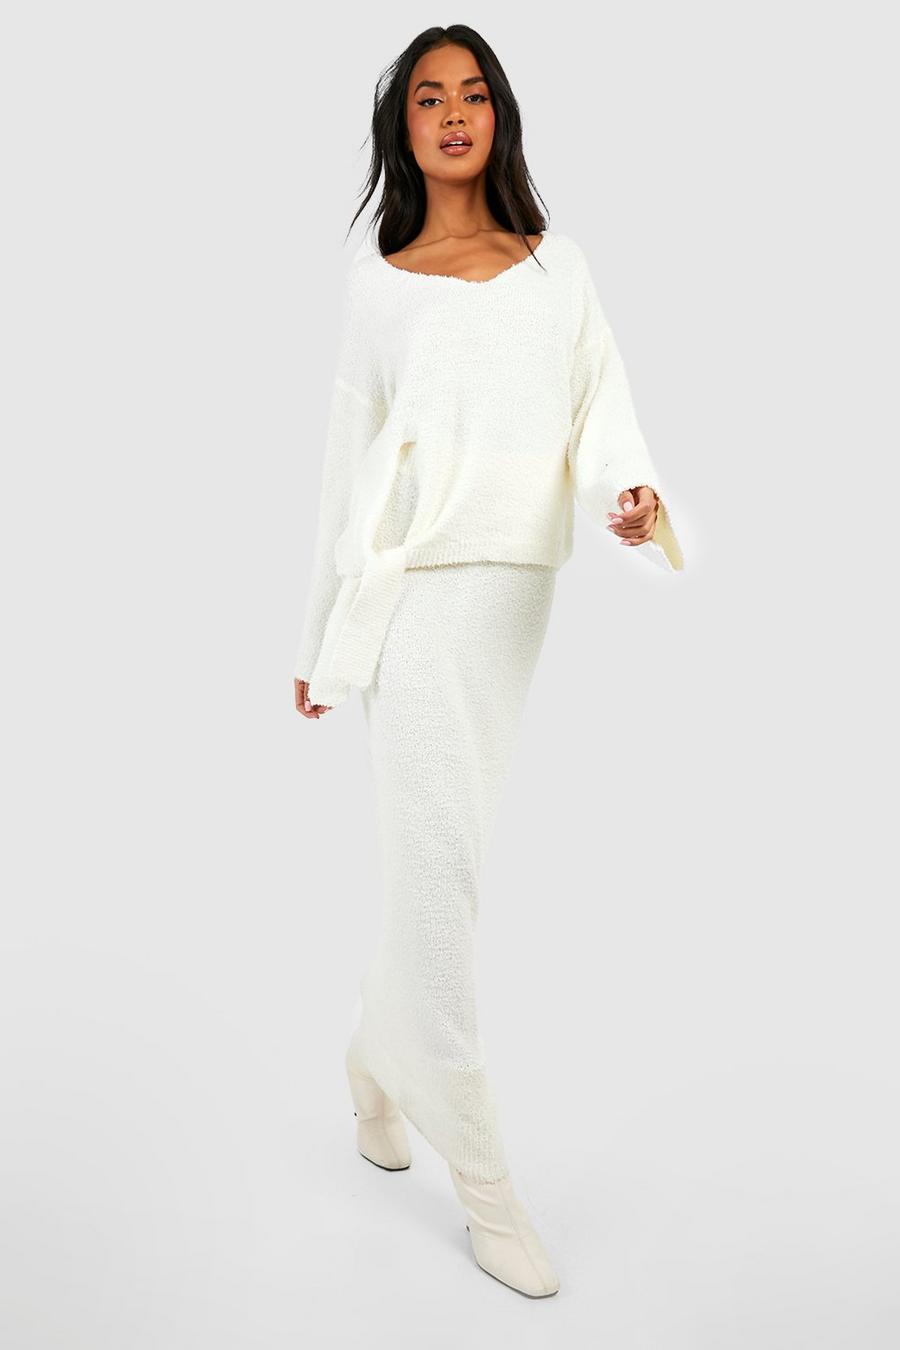 Ensemble premium texturé avec pull ample et jupe longue, Ivory weiß